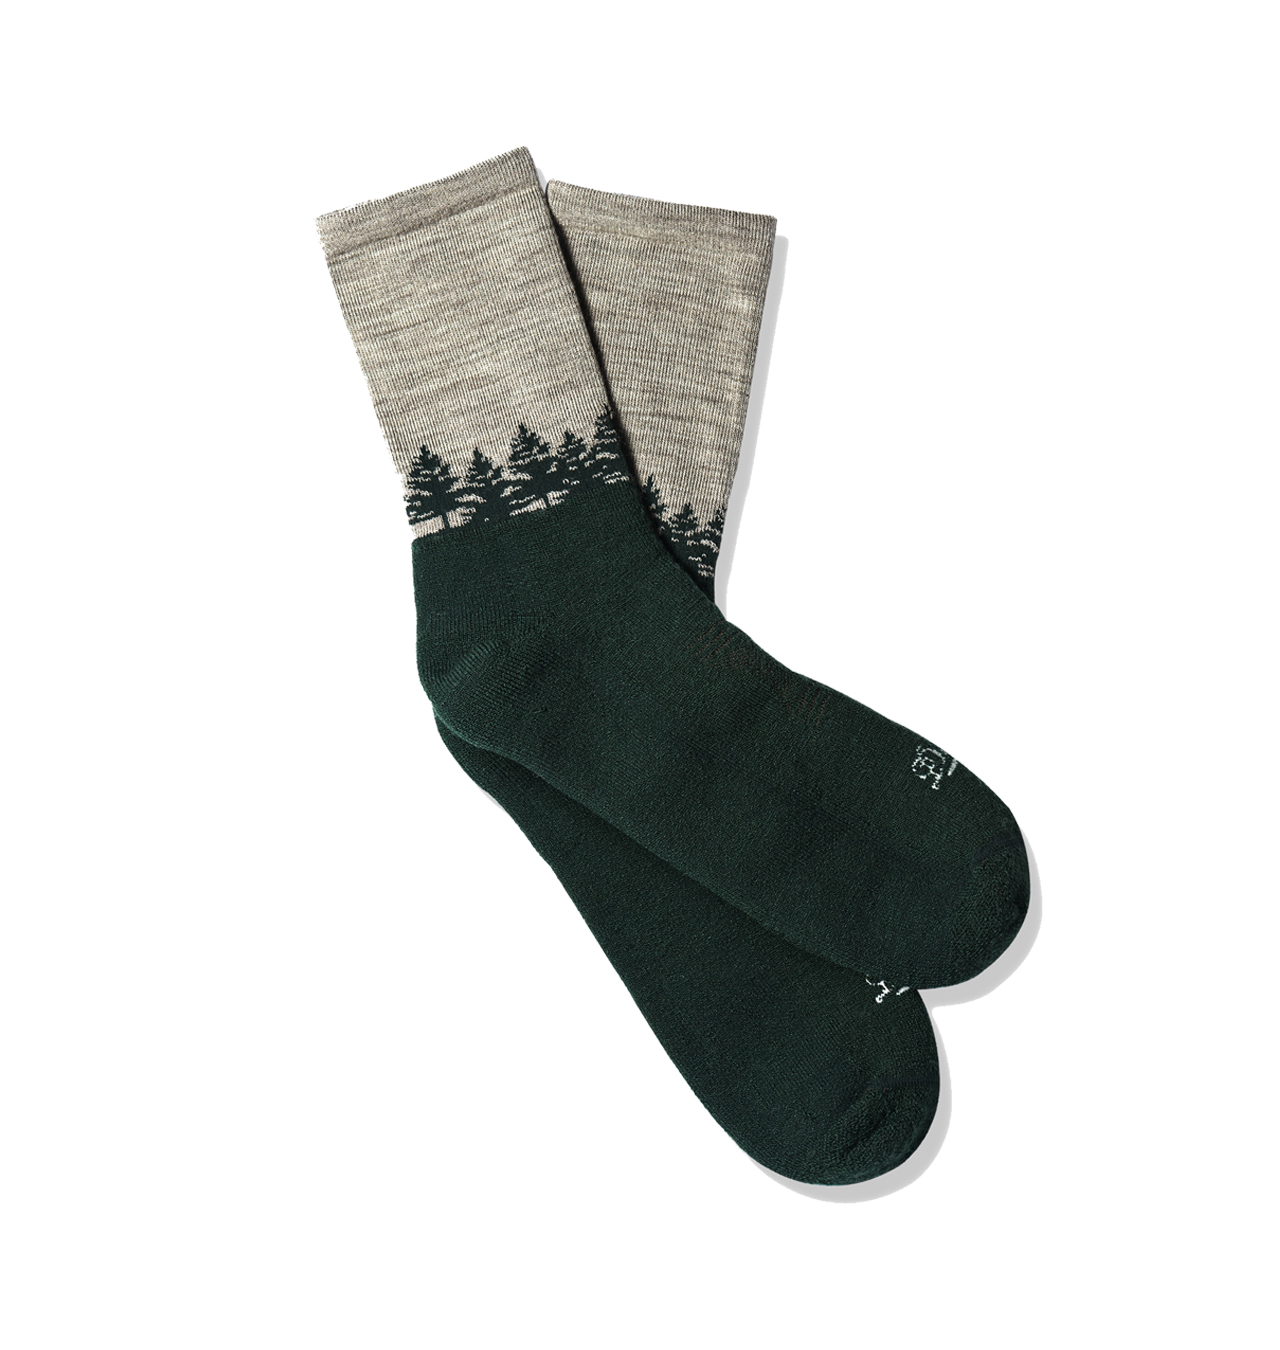 Danner - Merino Midweight Hiking Socks (3/4 Crew) - Green/Gray